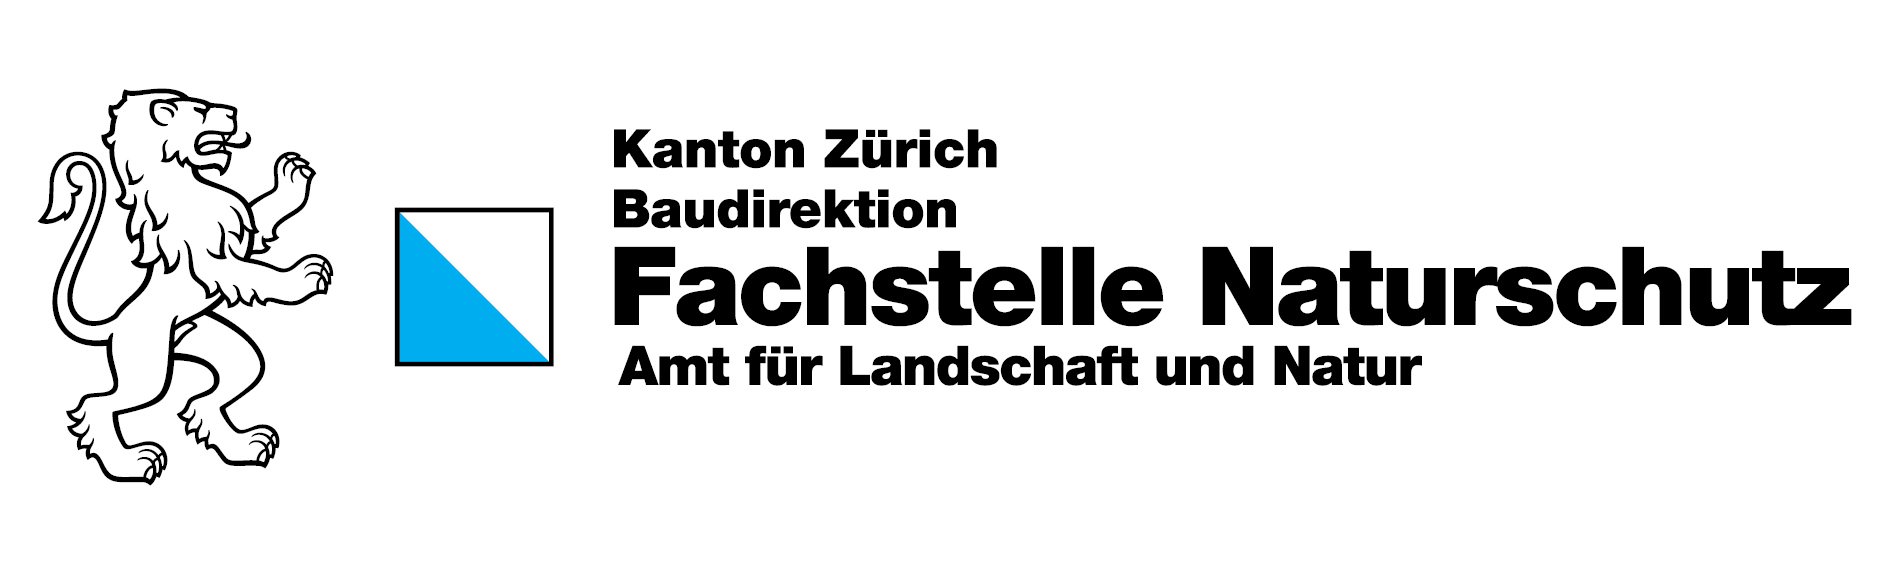 Fachstelle Naturschutz des Kantons Zürich